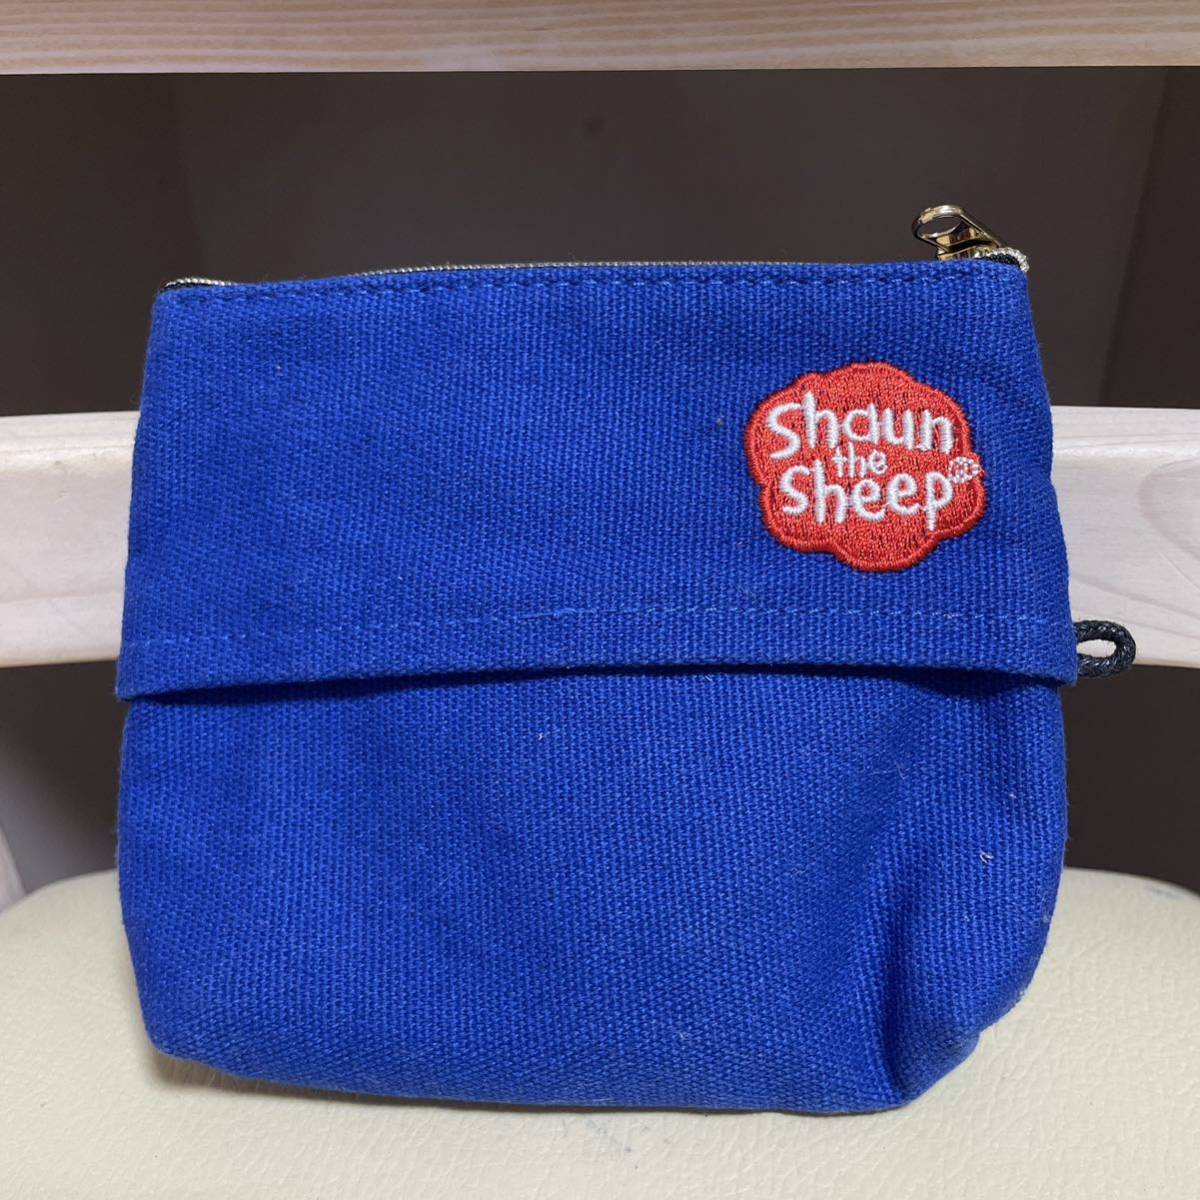 * new goods *.... Sean tissue case pouch 